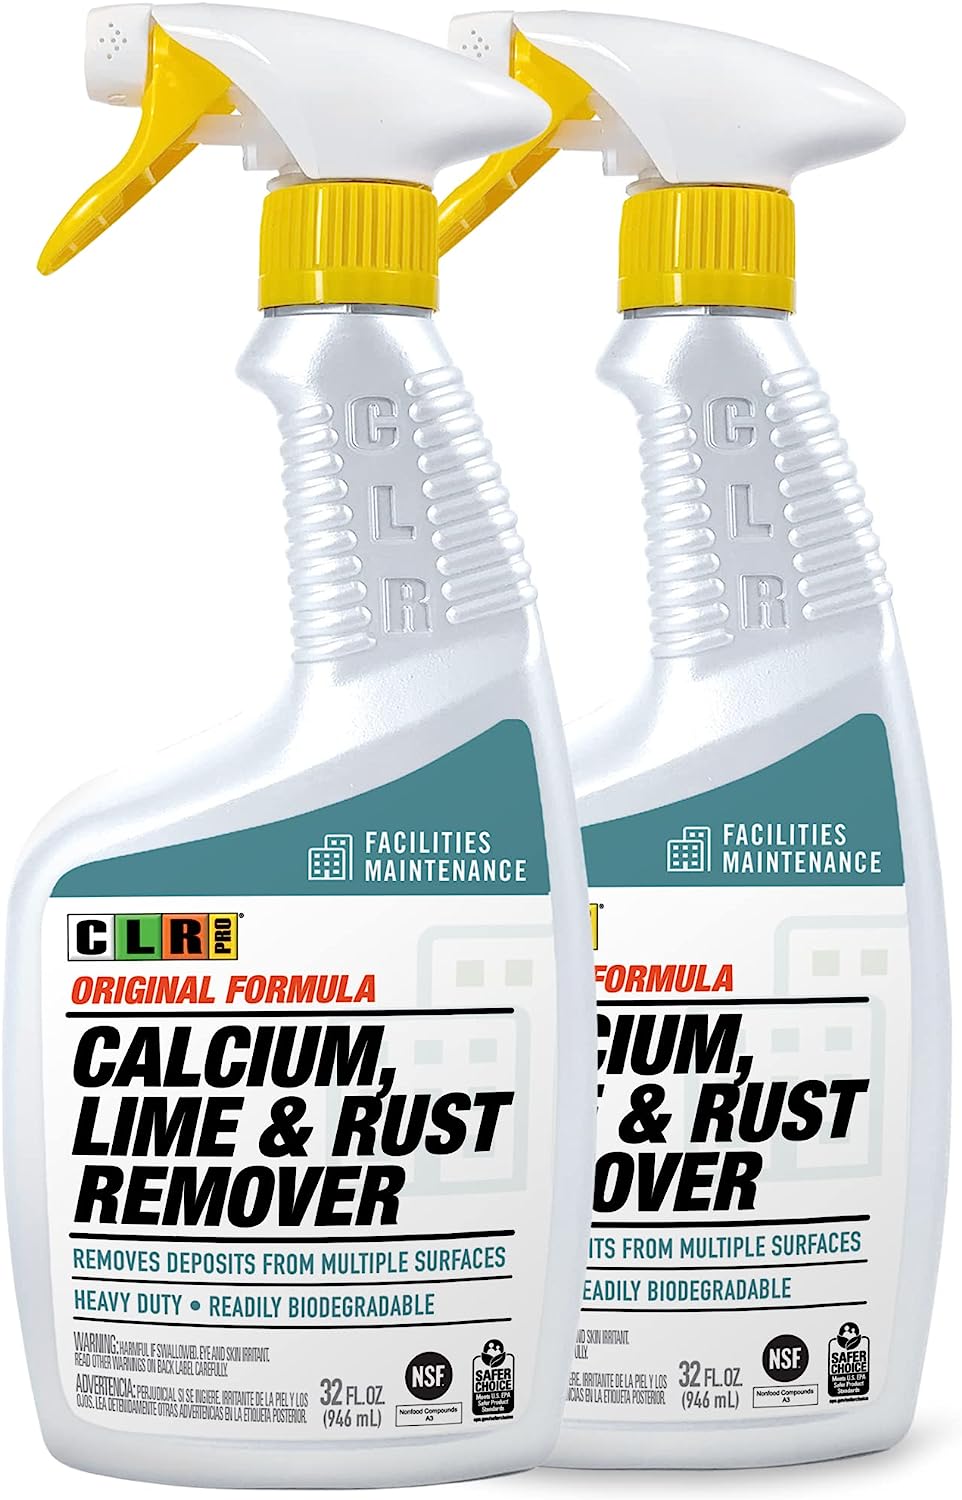 CLR PRO Industrial Calcium, Lime & Rust Remover - [...]